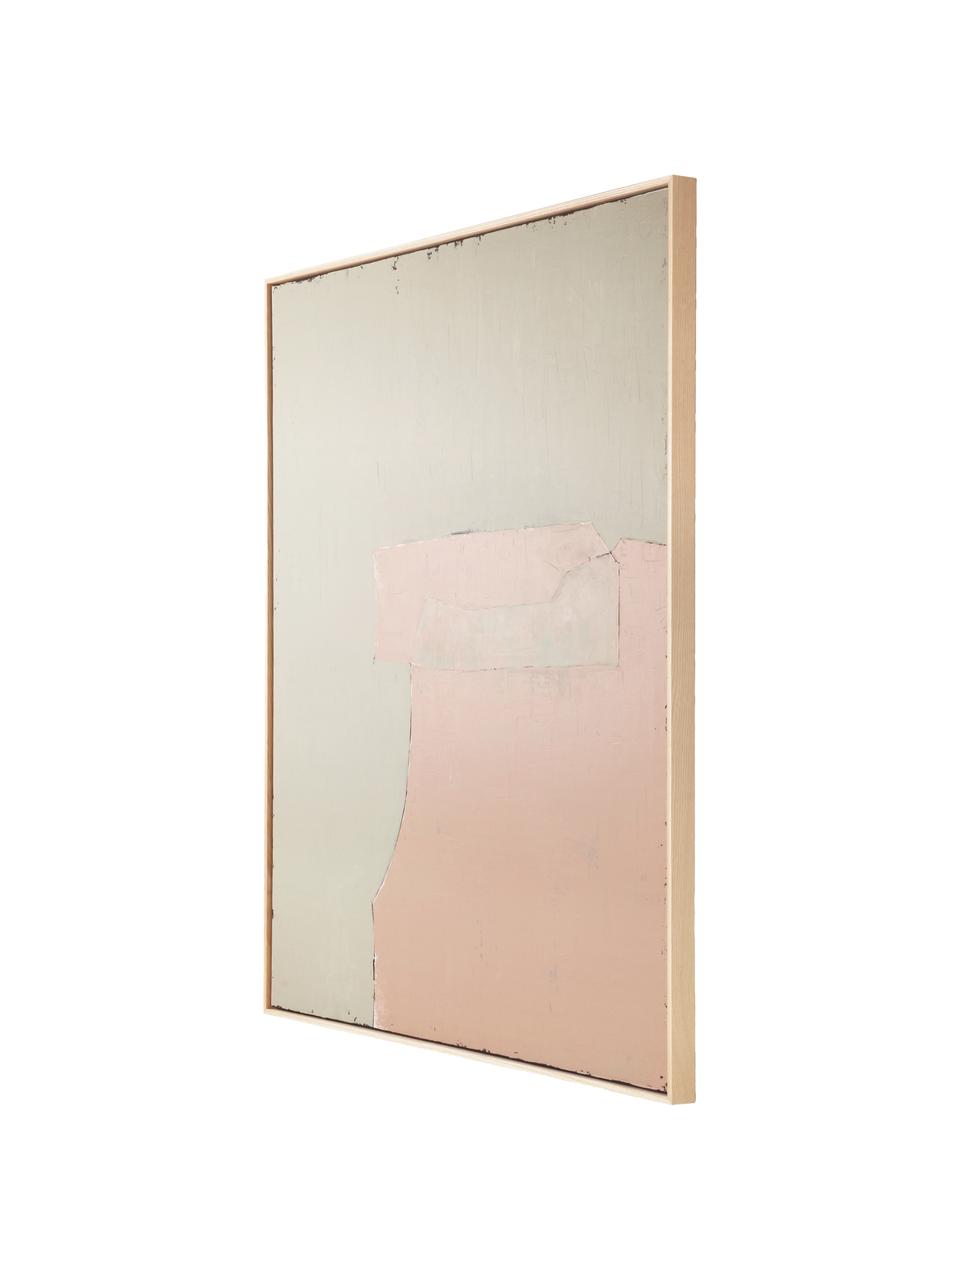 Ingelijste canvasdoek Olivia, Lijst: essenhout, Crèmekleurig, roze, B 100 x H 120 cm